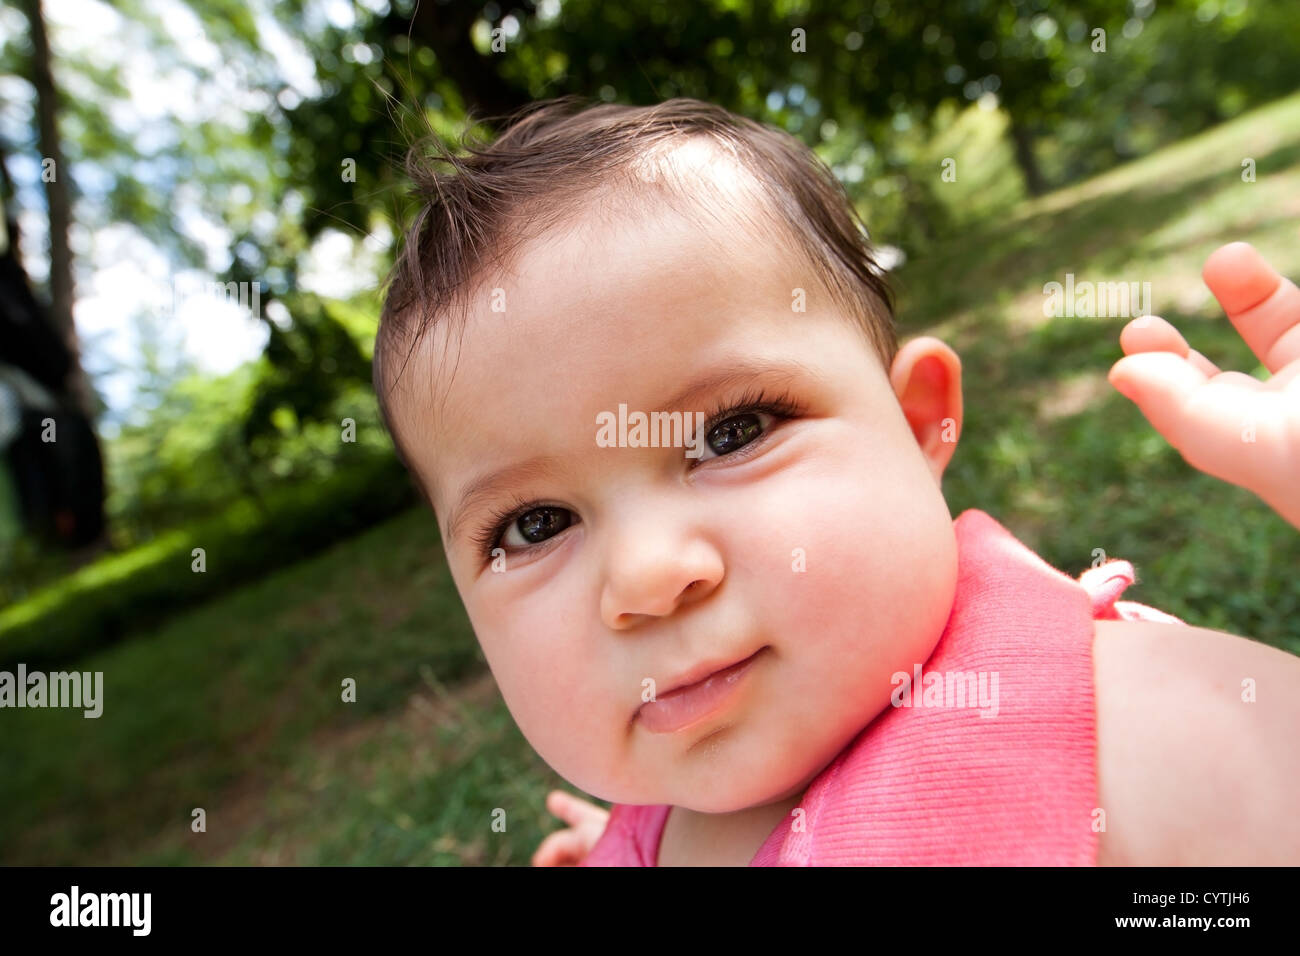 Caricature drôle cute baby face déformée avec de grandes joues potelées d'un blanc brillant fille bébé hispanique avec les yeux, dans un parc Banque D'Images